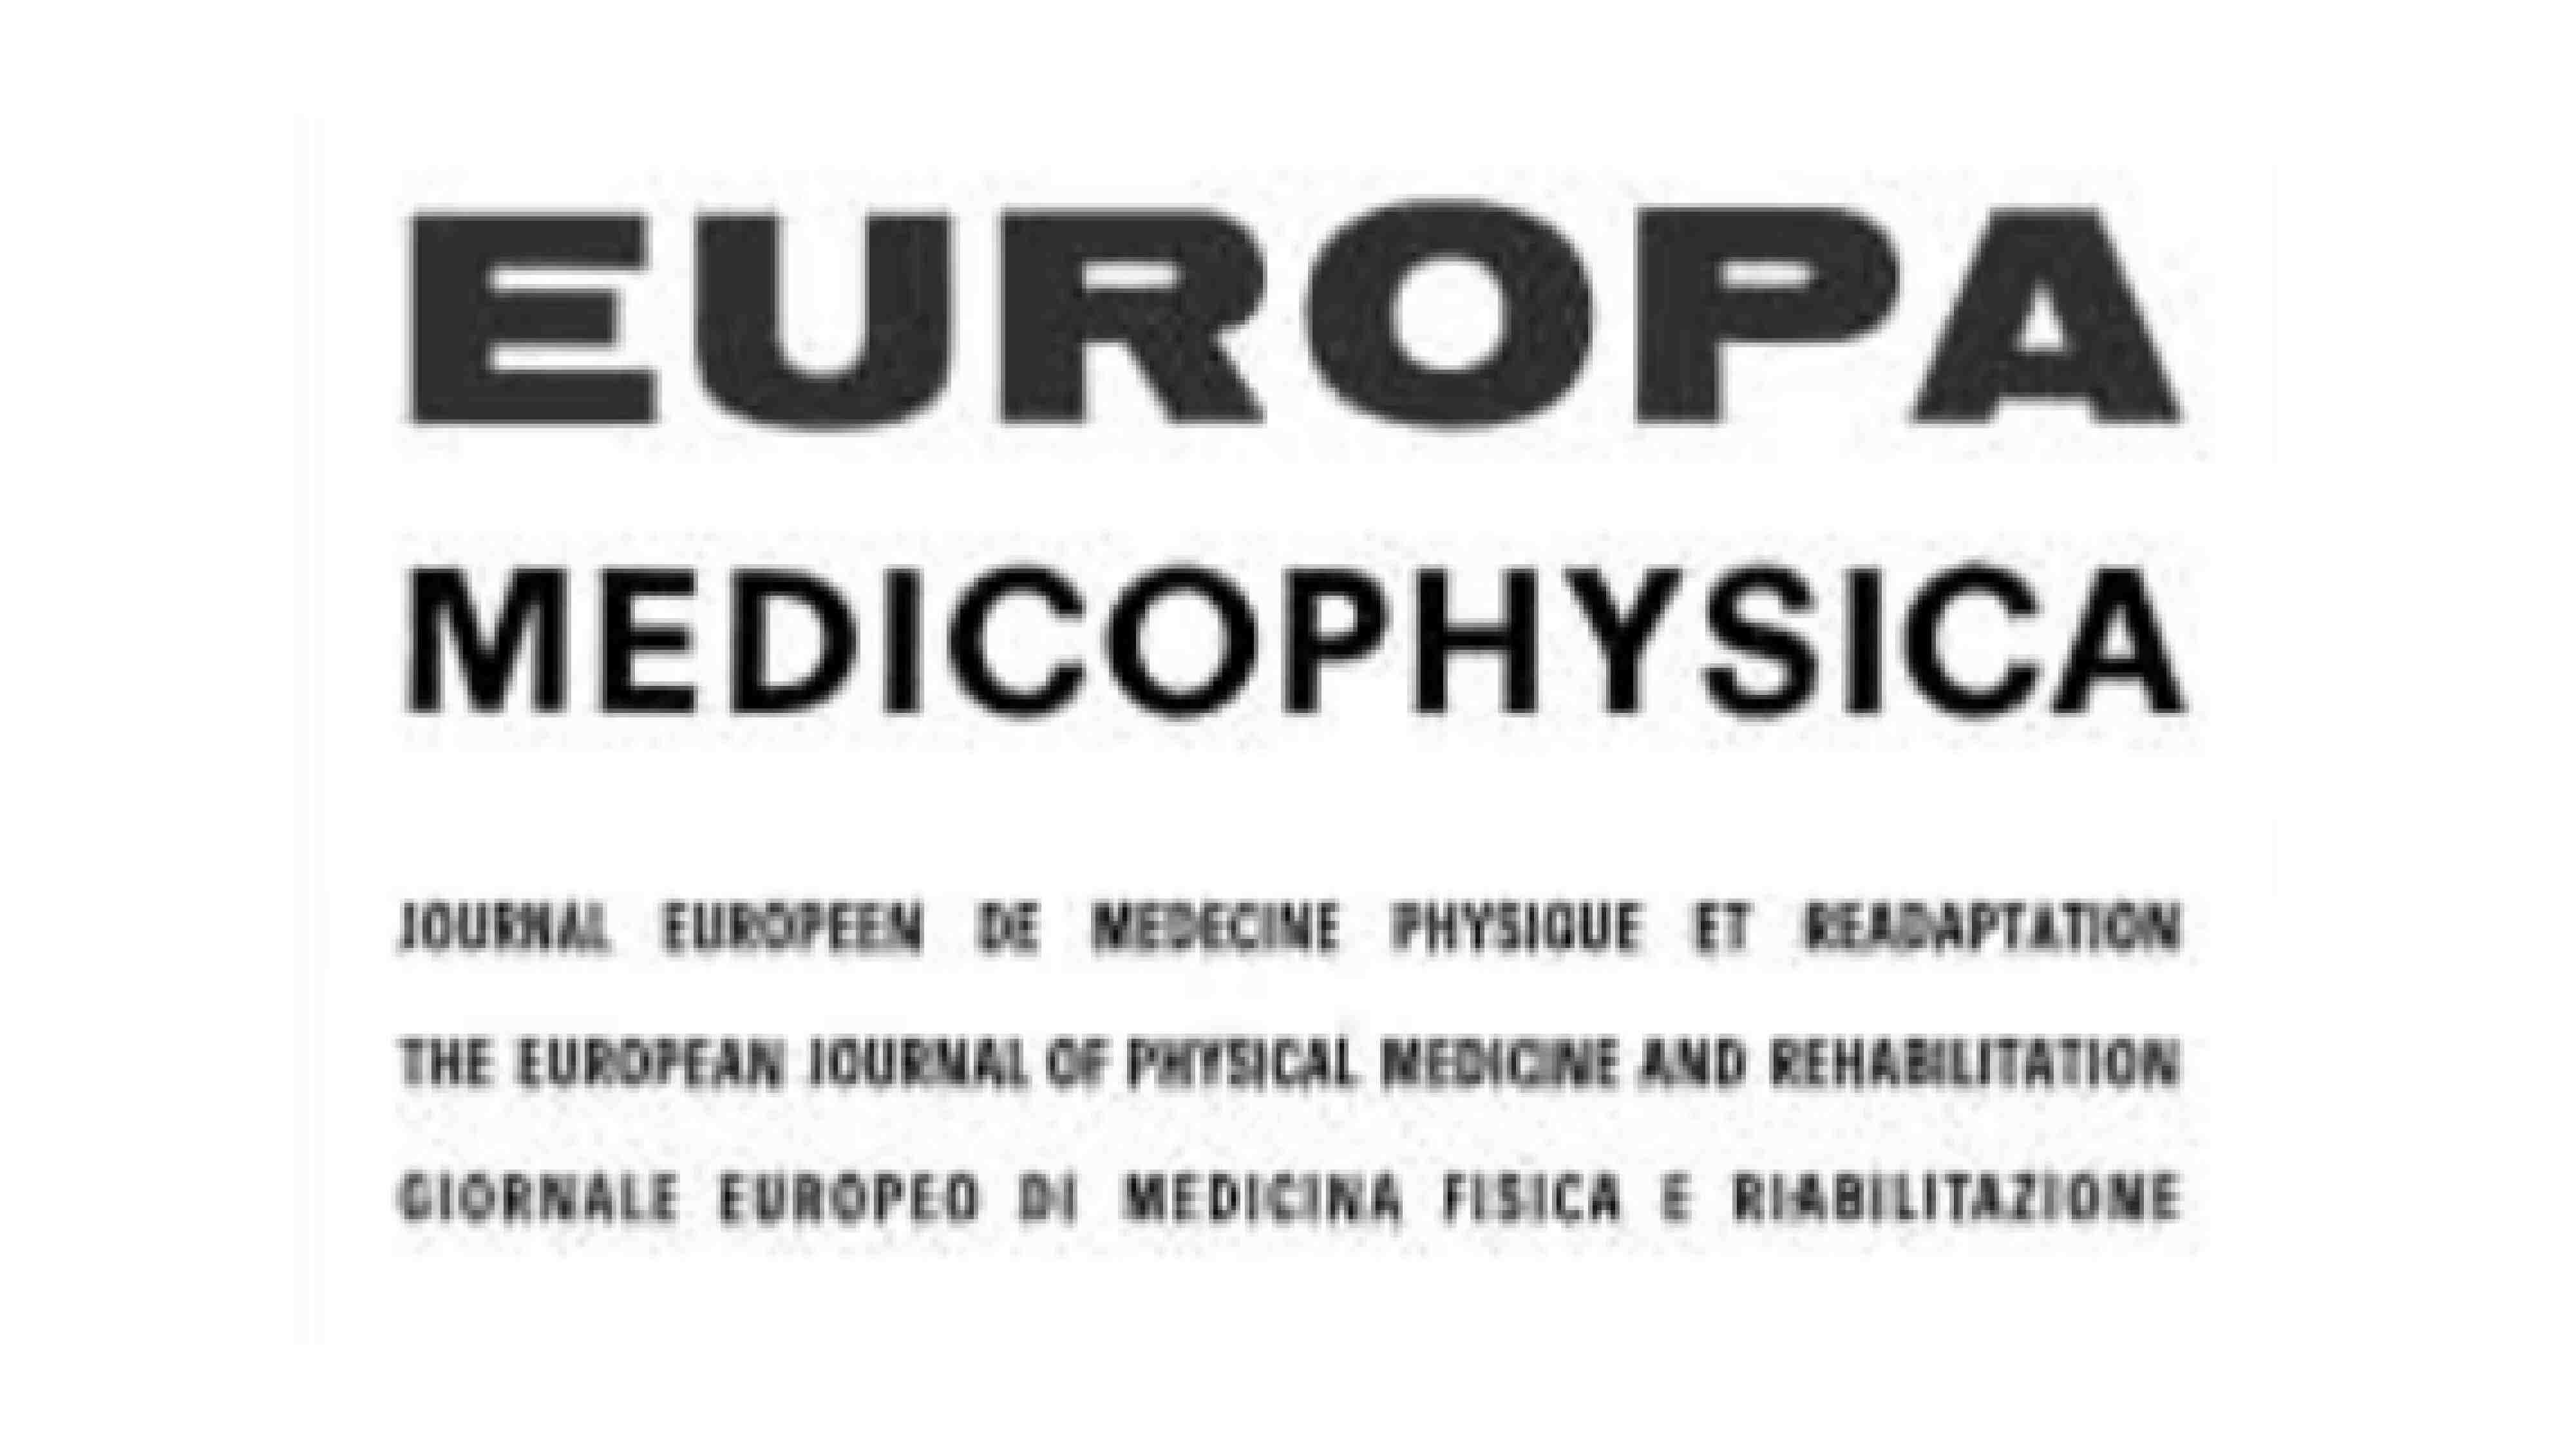 EUROPA MEDICOPHYSICA